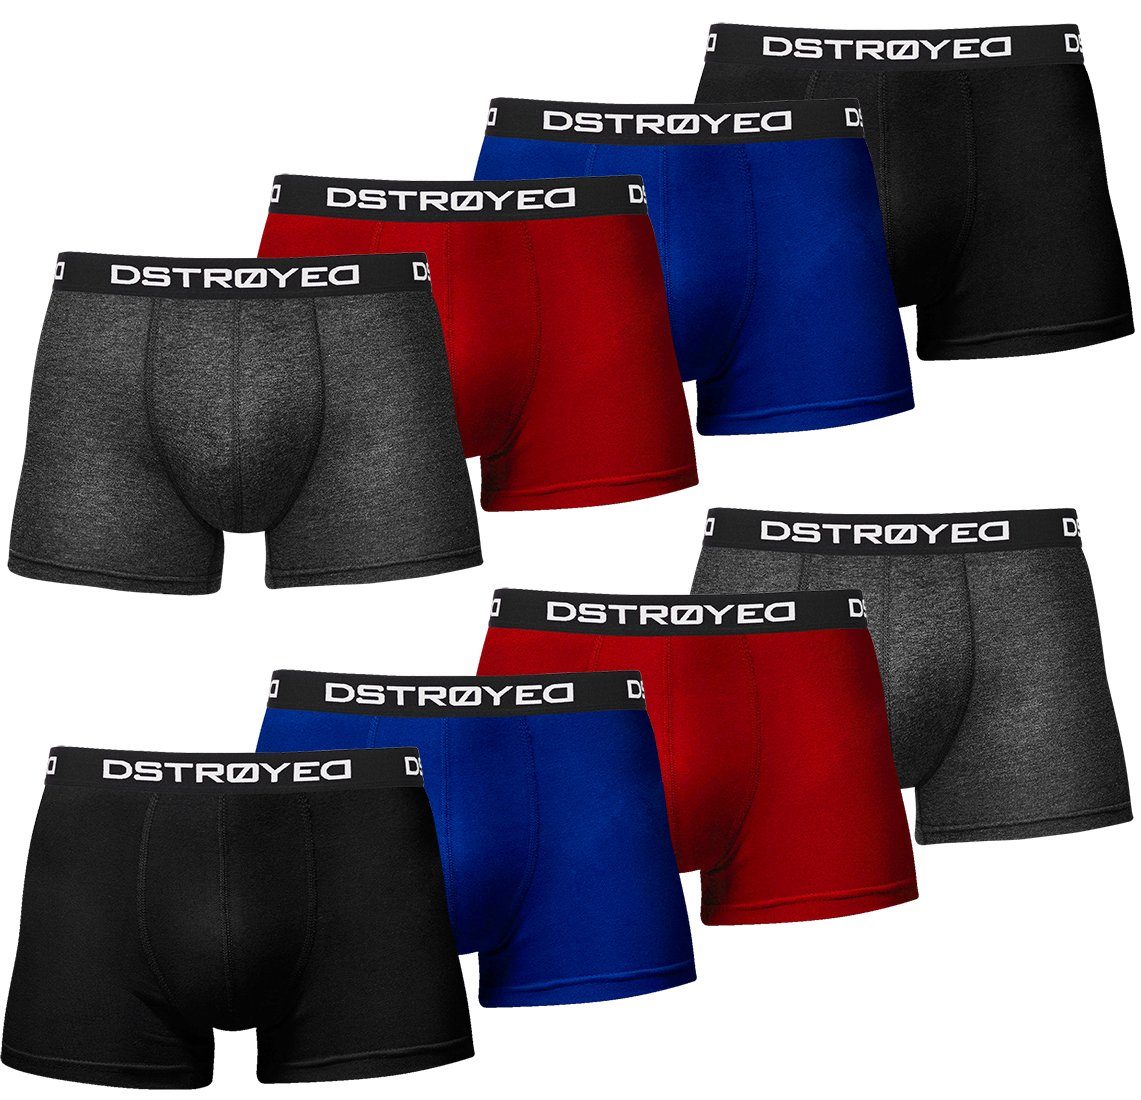 DSTROYED Boxershorts Herren Männer Unterhosen Baumwolle Premium Qualität perfekte Passform (Vorteilspack, 8er, 8er Pack) 316f-mehrfarbig